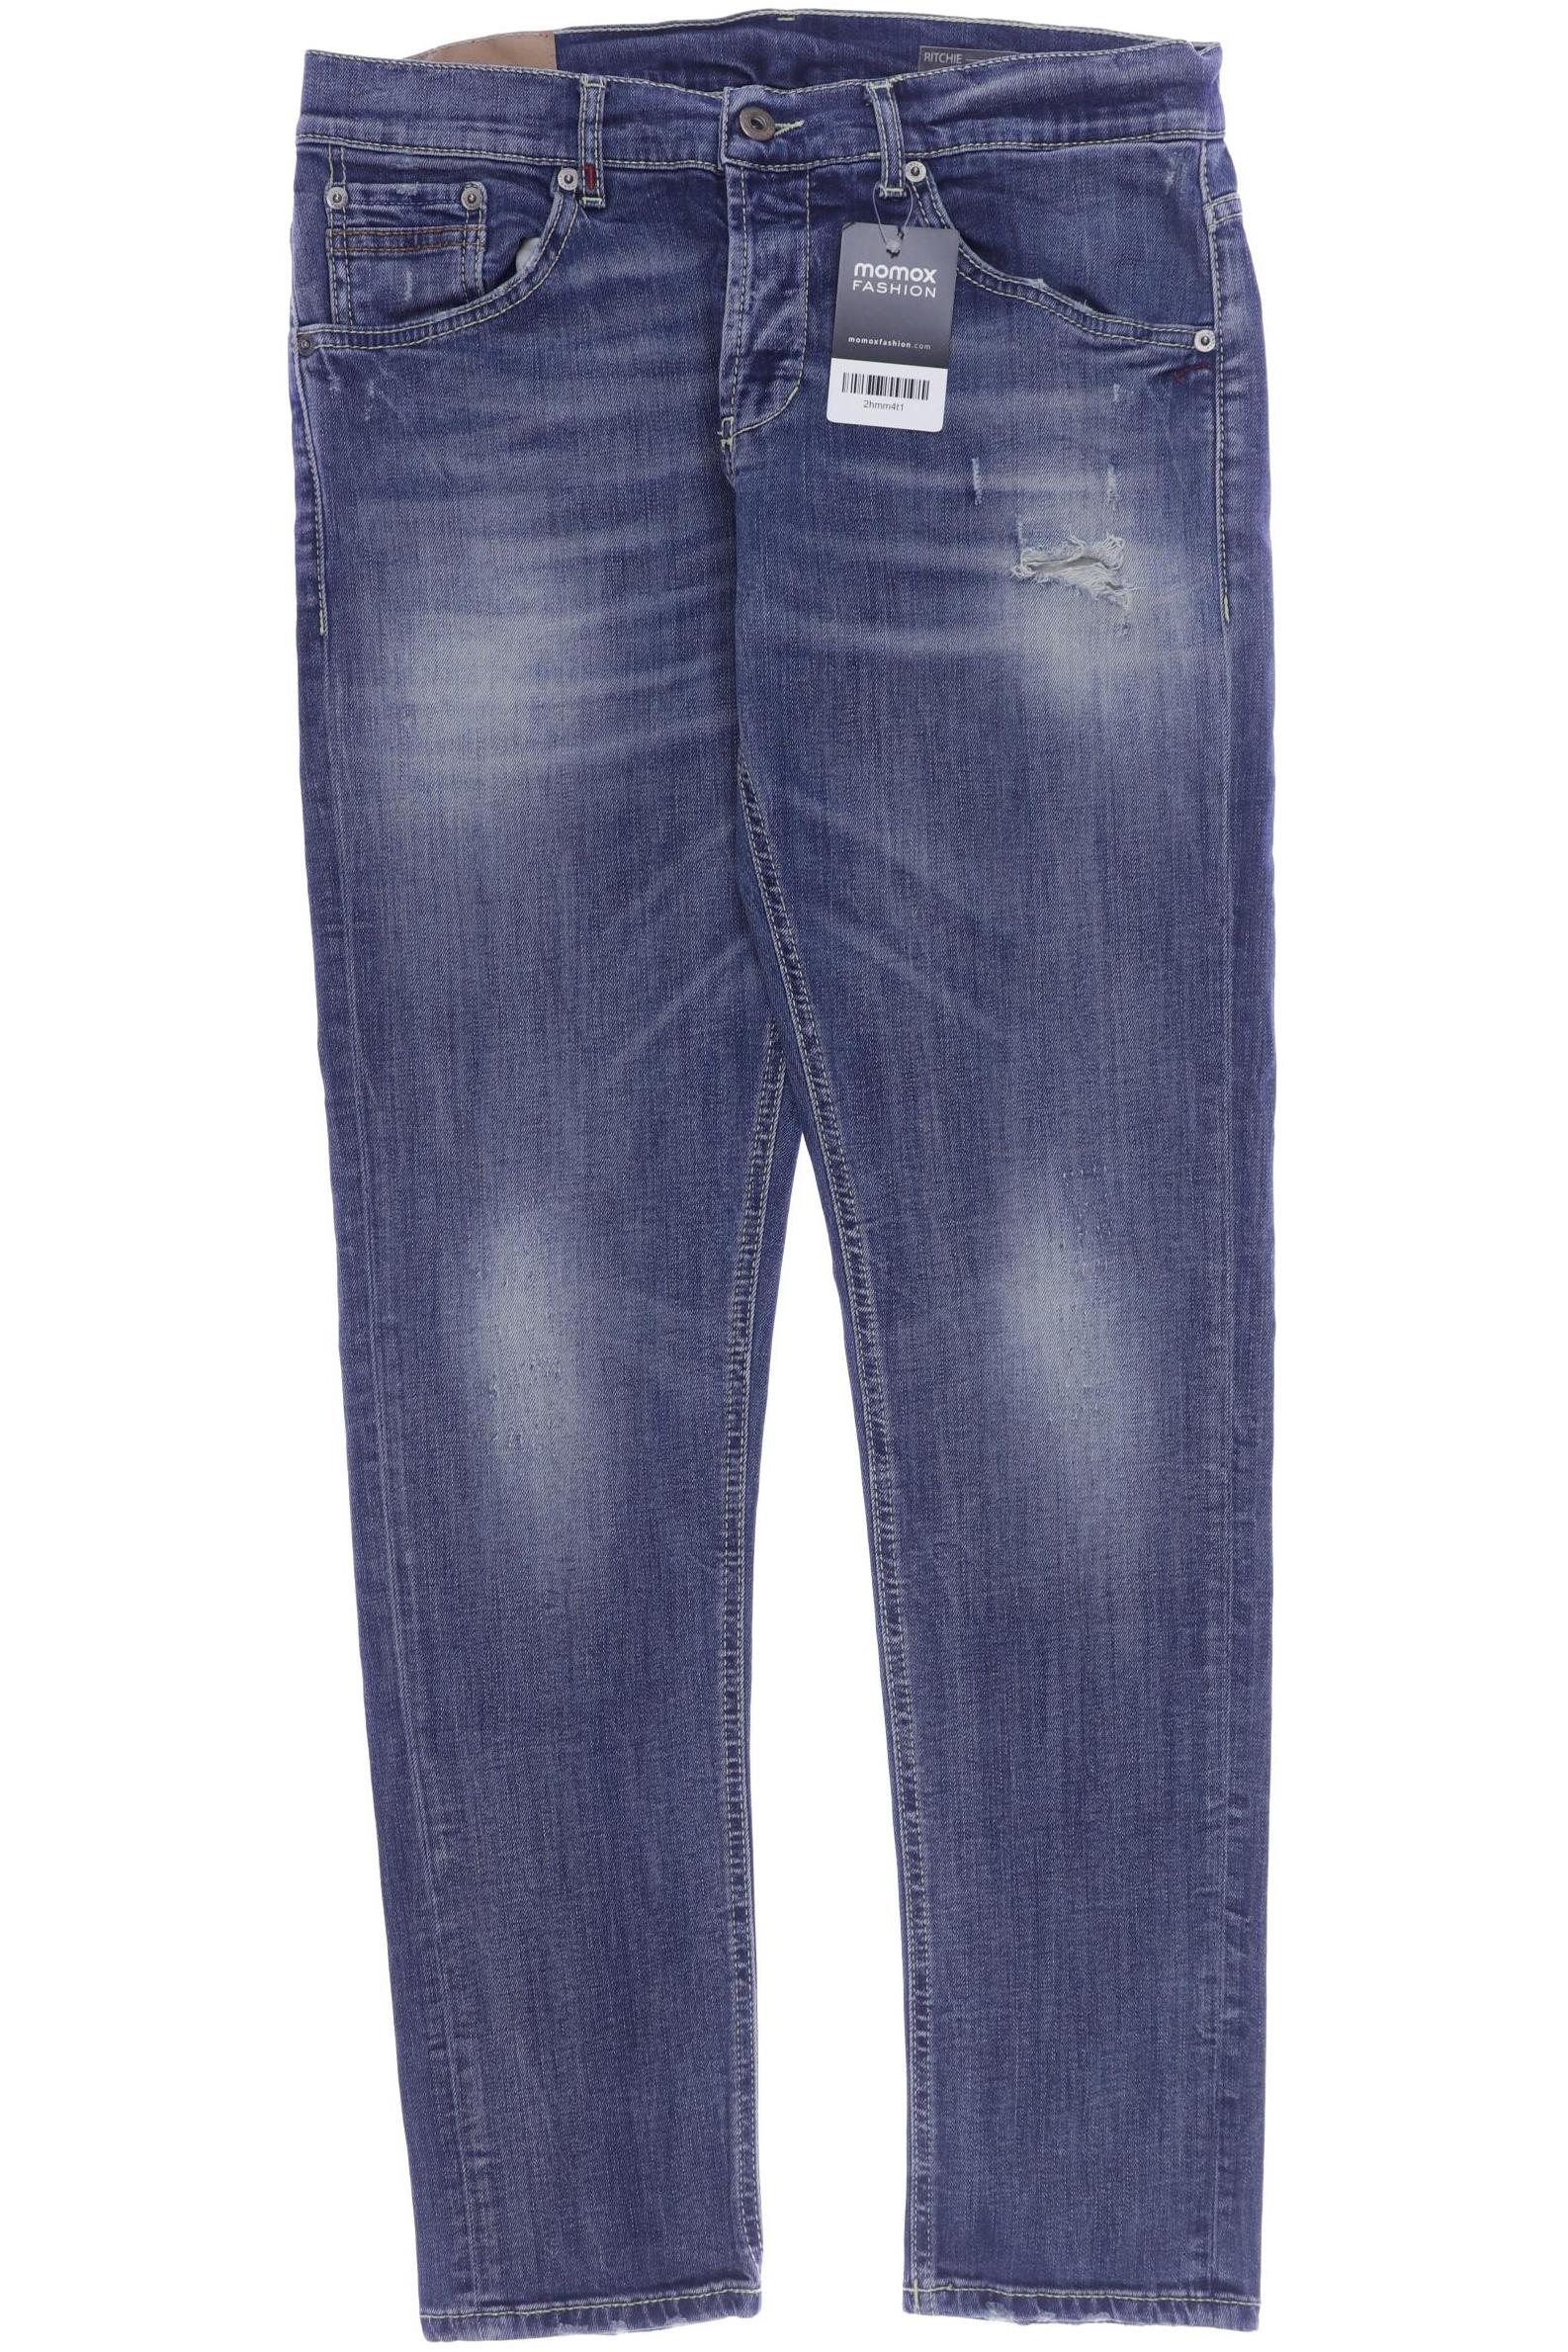 Dondup Herren Jeans, blau, Gr. 52 von Dondup